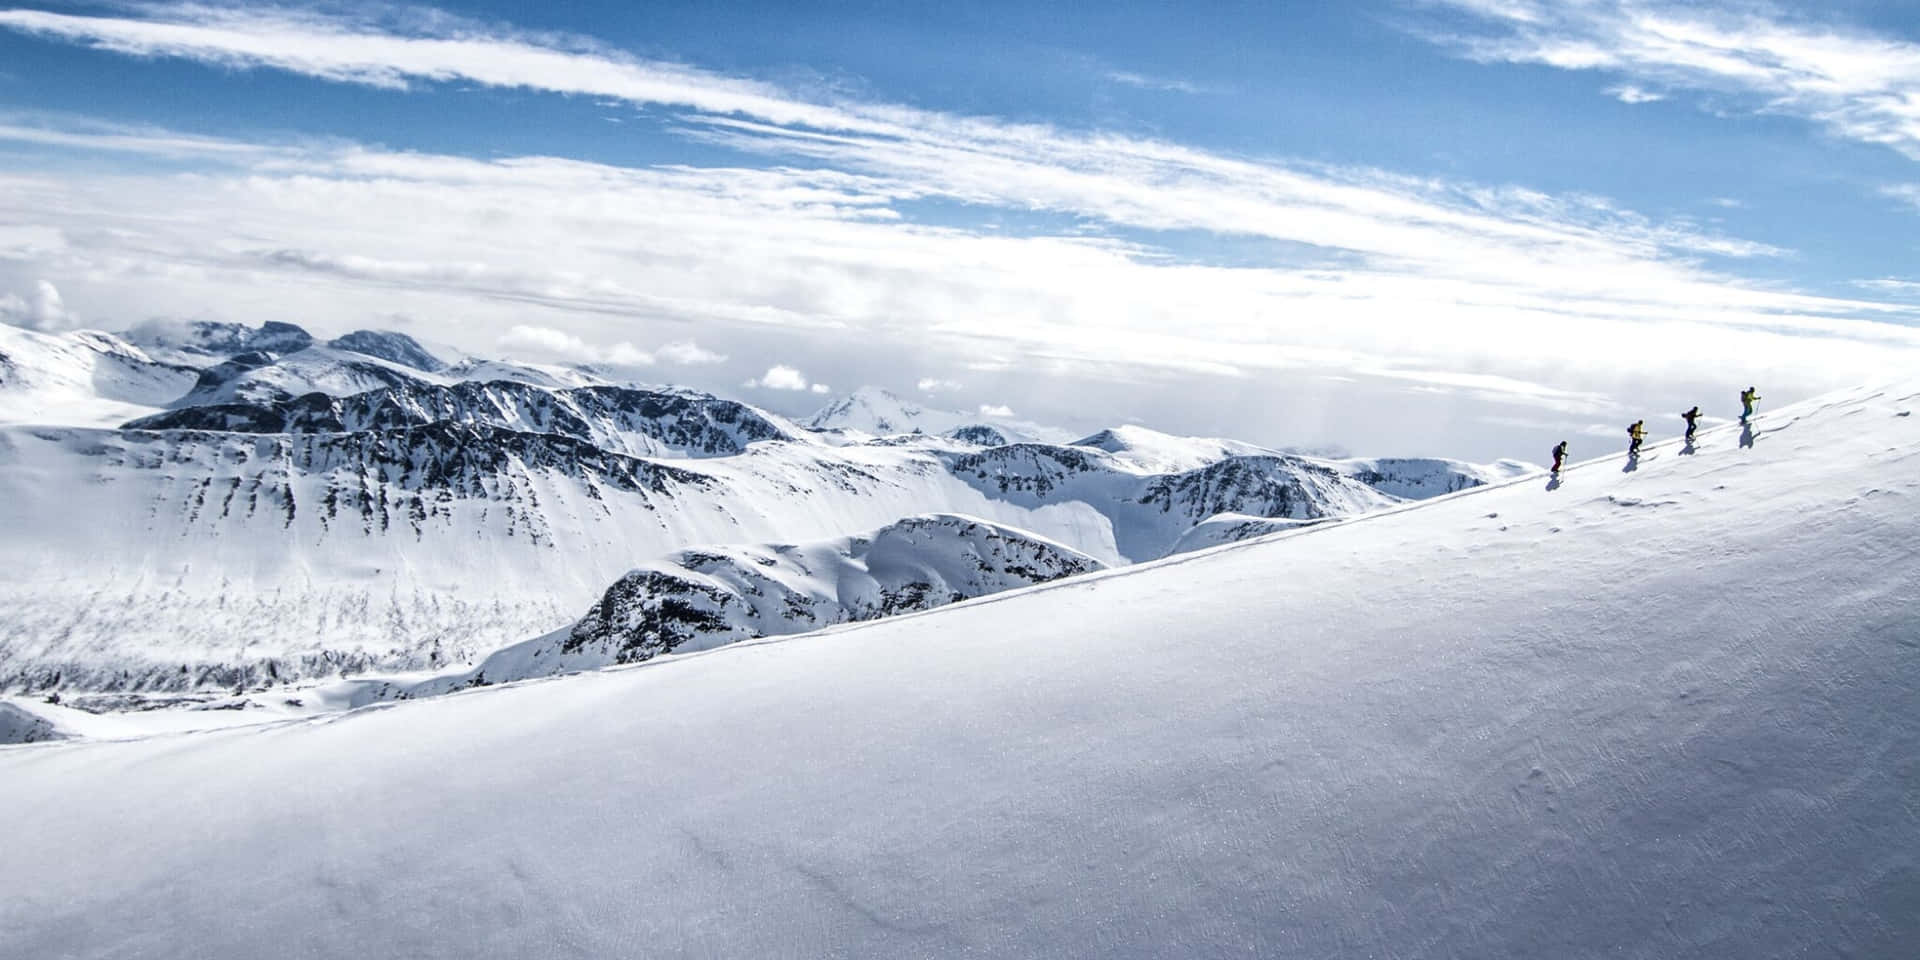 Nyd den smukke udsigt til et skihøjde! Wallpaper